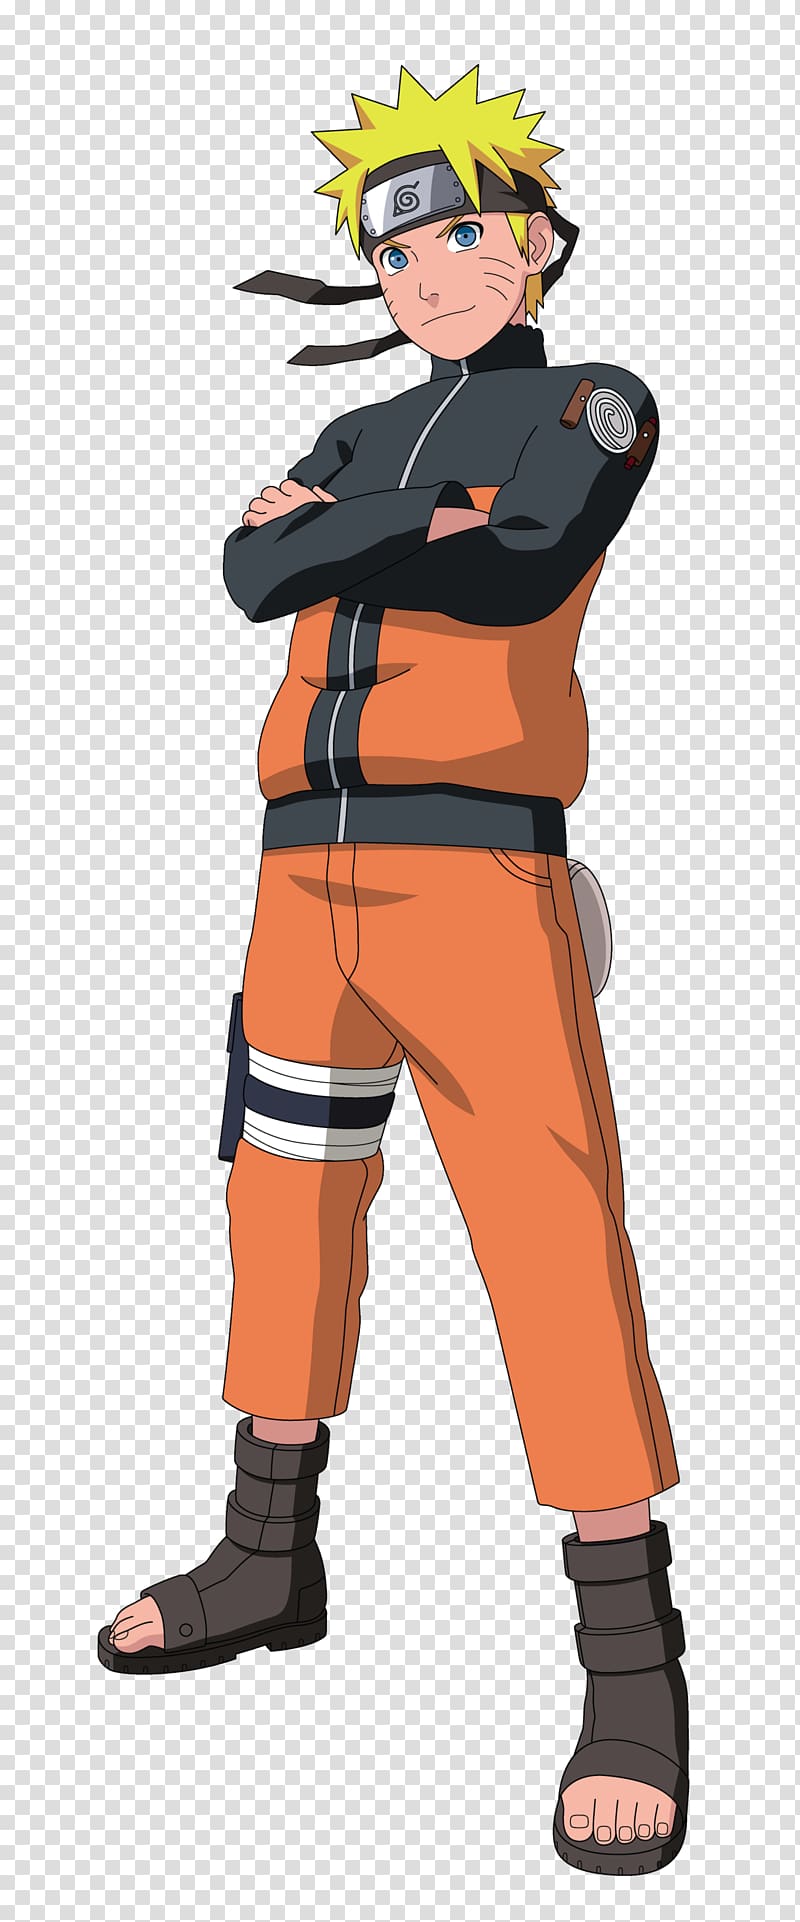 Naruto Uzumaki Sasuke Uchiha Hokage Naruto Shippuden: Ultimate Ninja Storm  3, naruto, manga, sasuke Uchiha, cartoon png